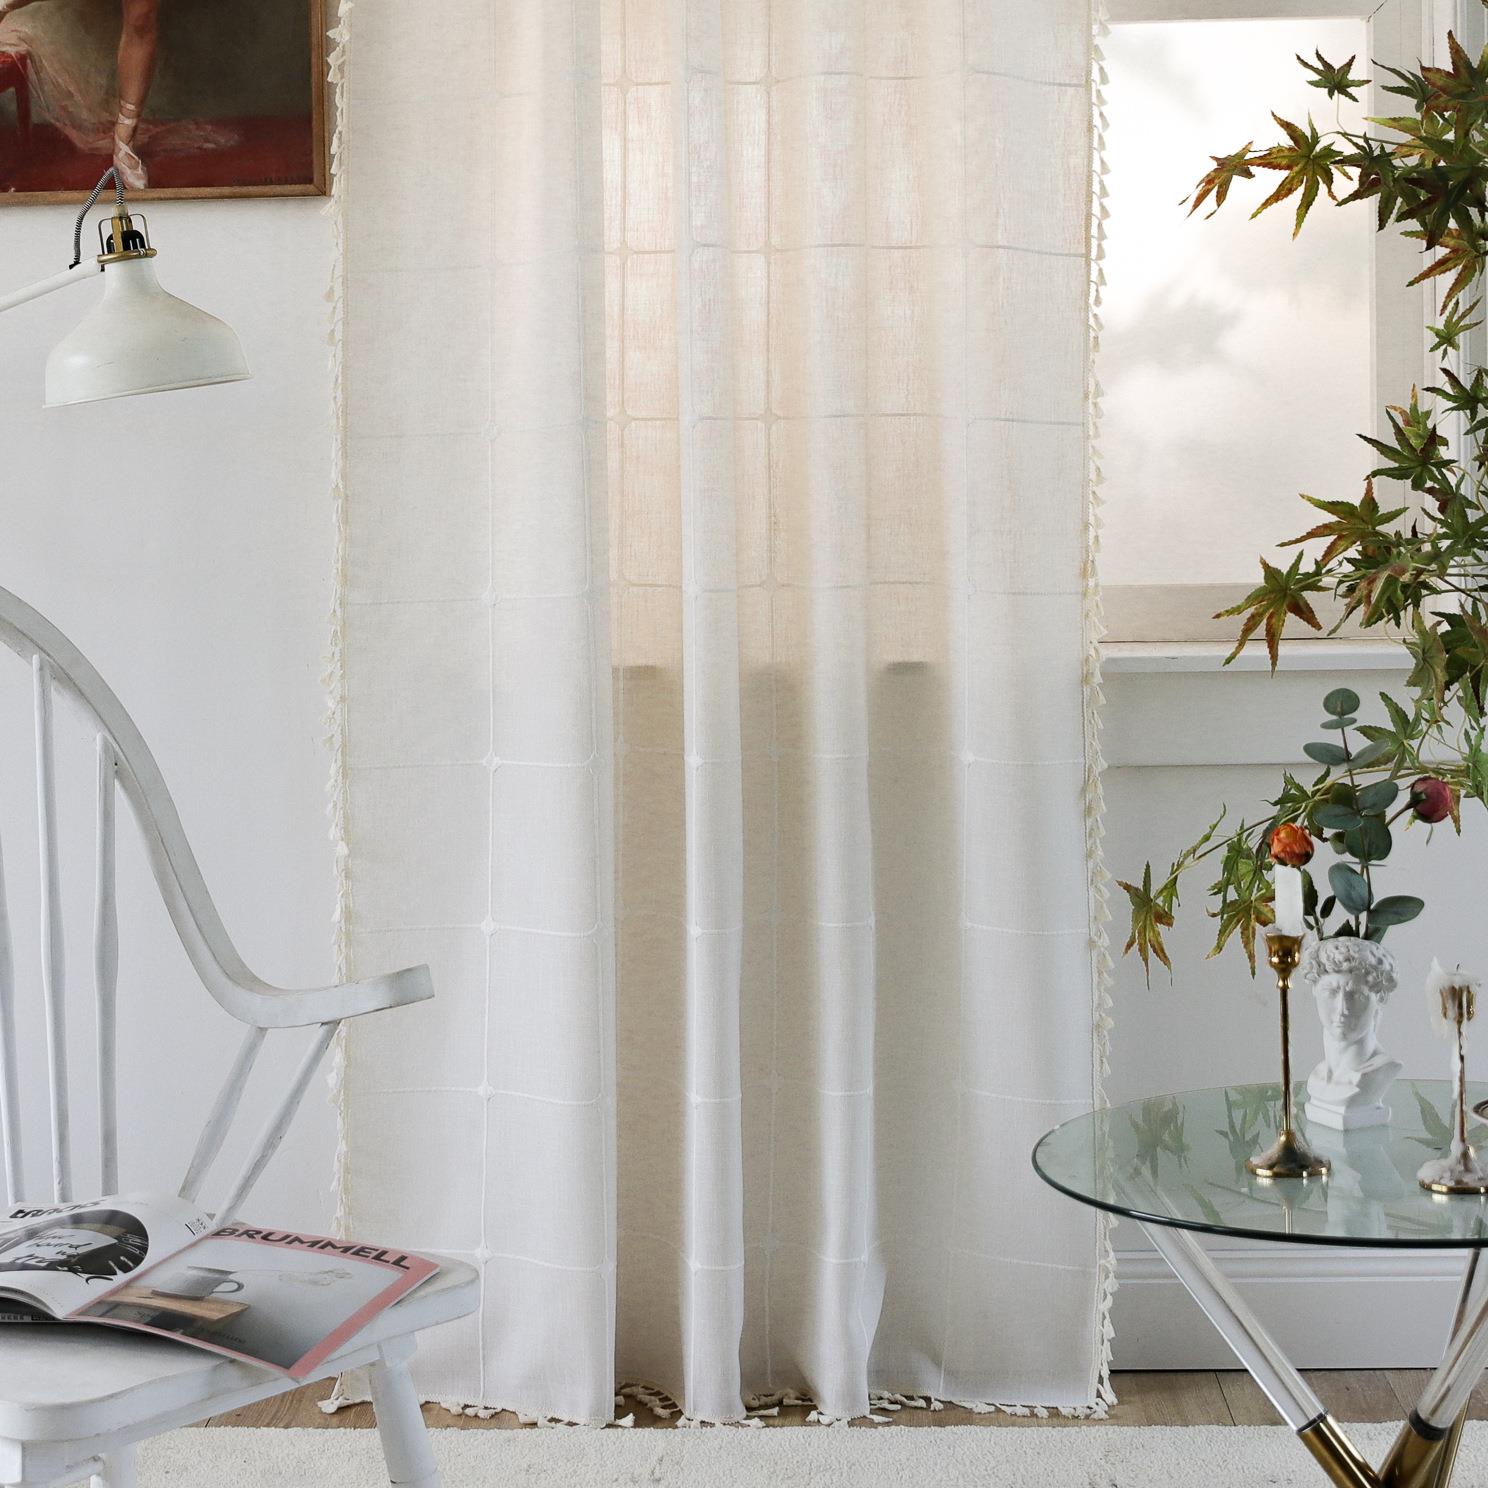 美式風刺繡白色大格子窗簾多種尺寸可選裝飾飄窗廚房小窗戶風格百搭遮光效果好